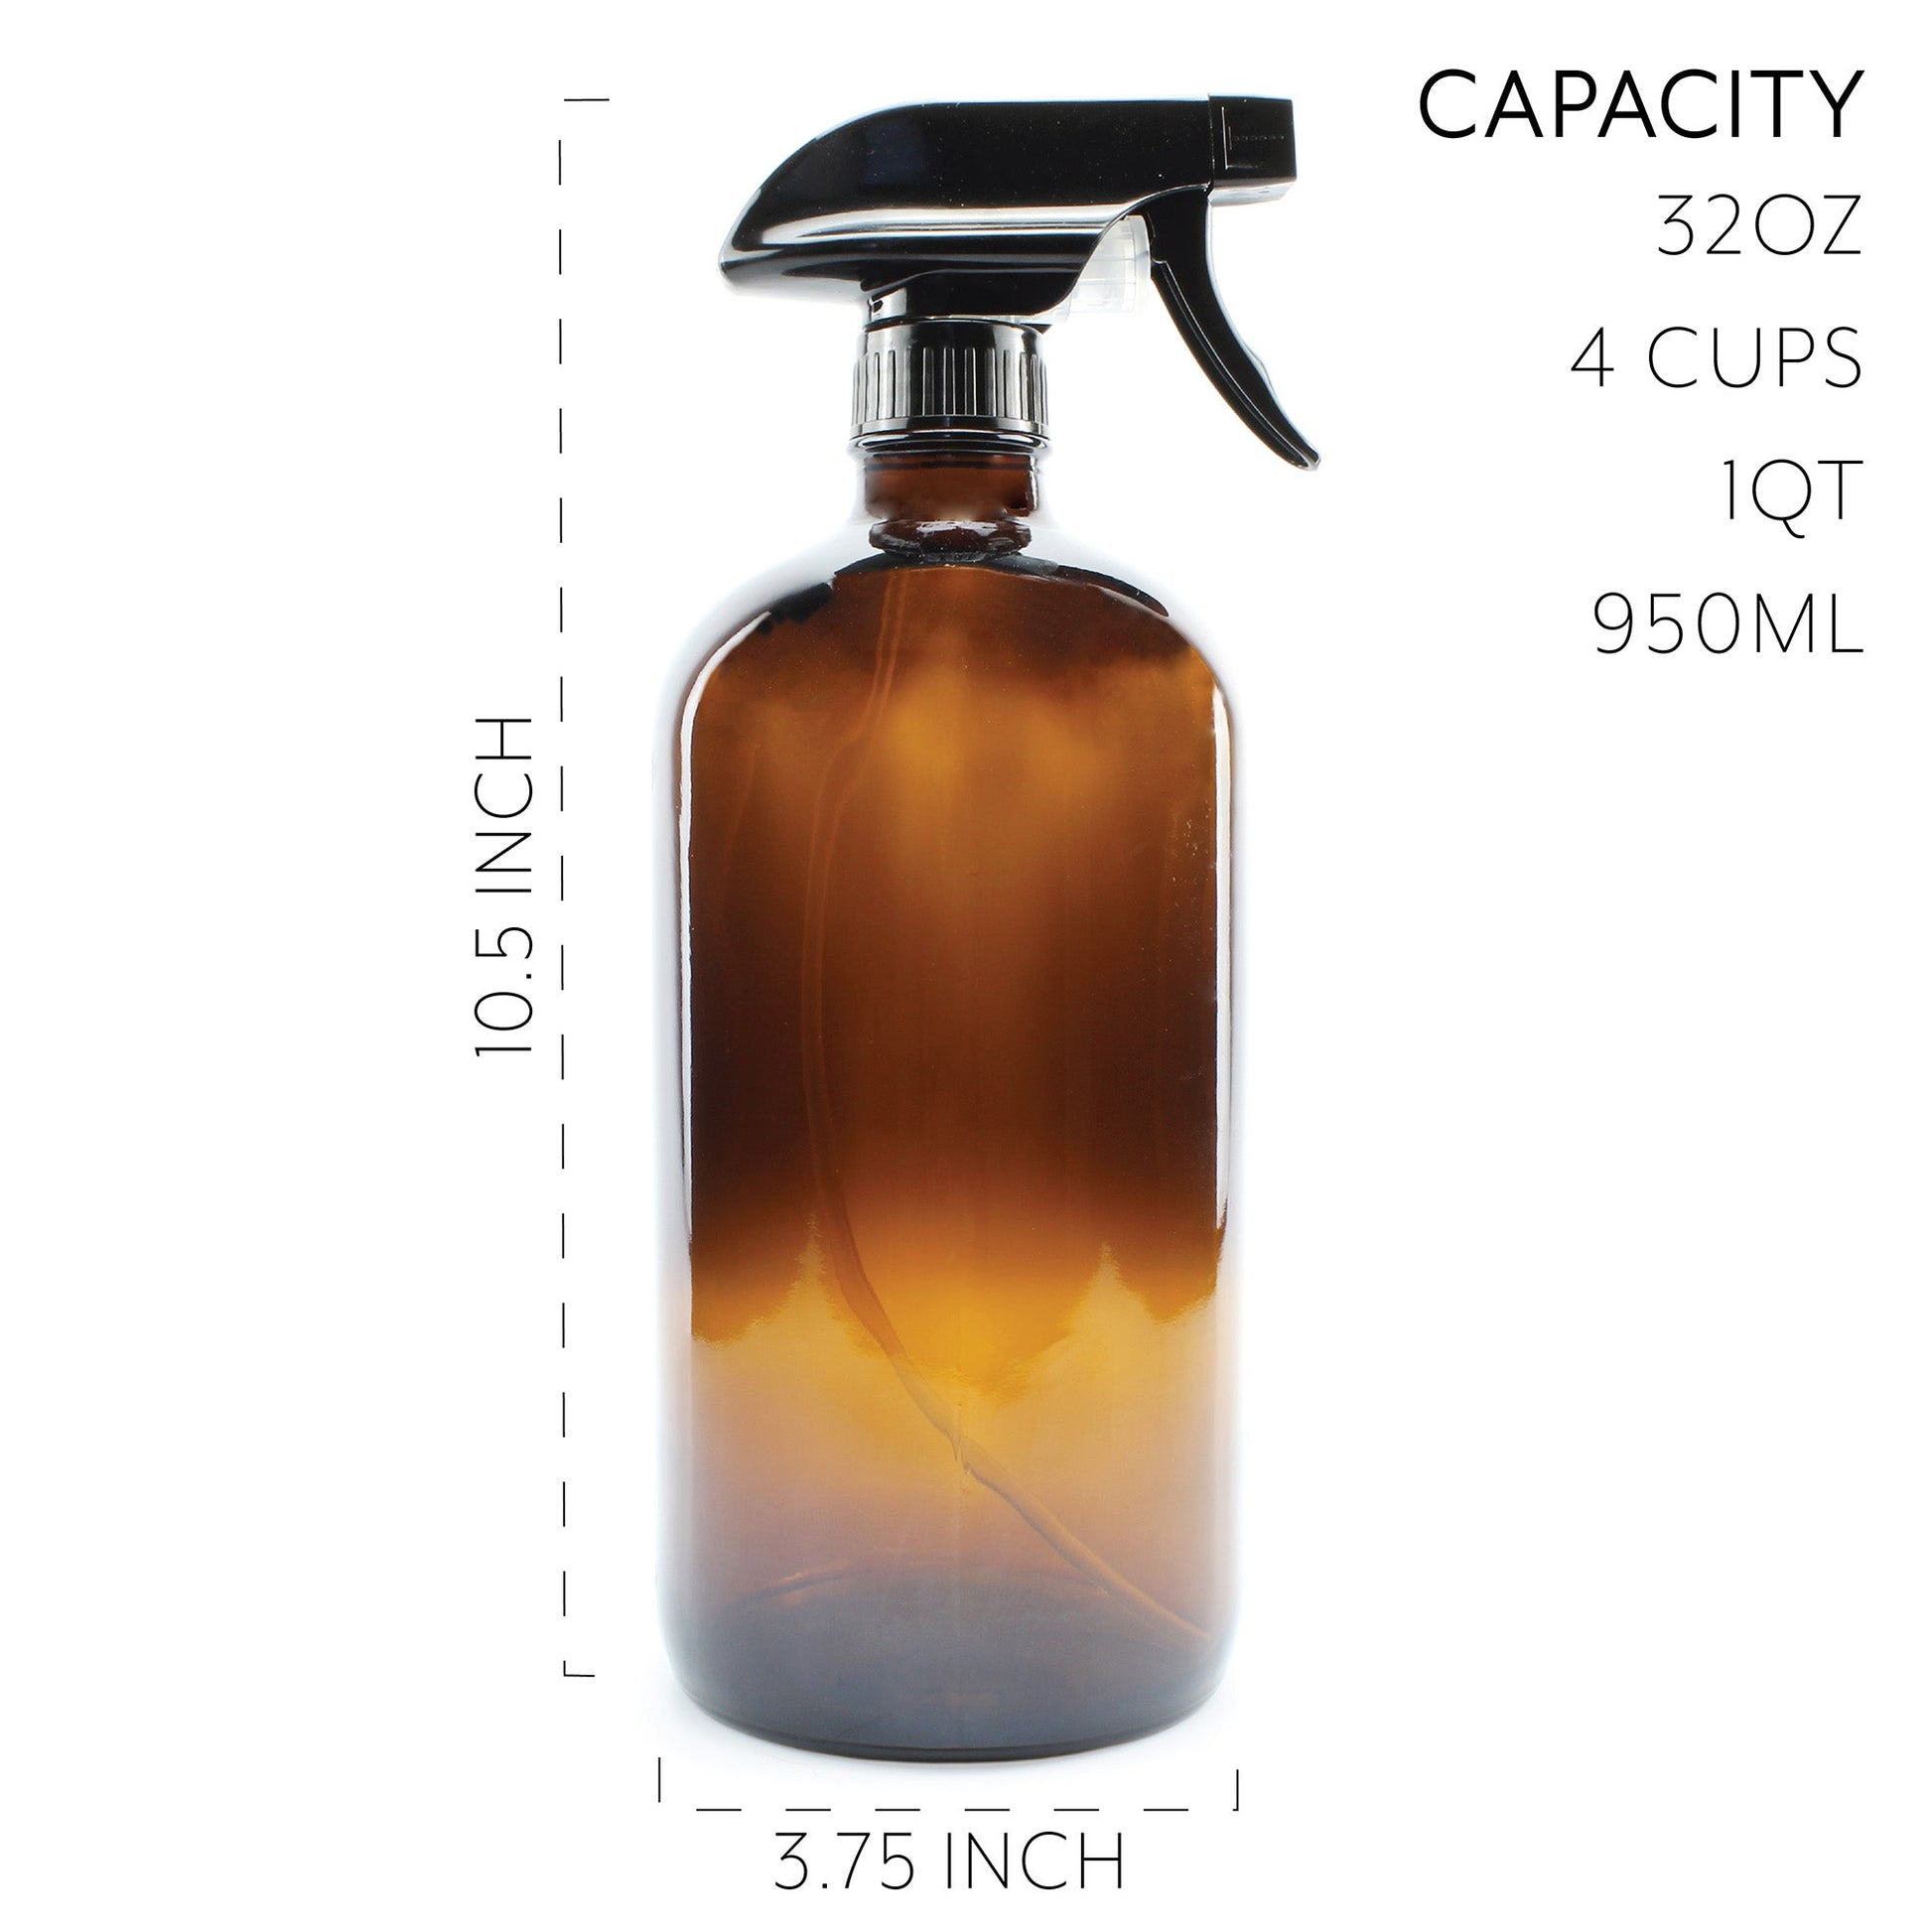 32oz Amber Glass Spray Bottles (2-Pack) - sh1141cb032oz